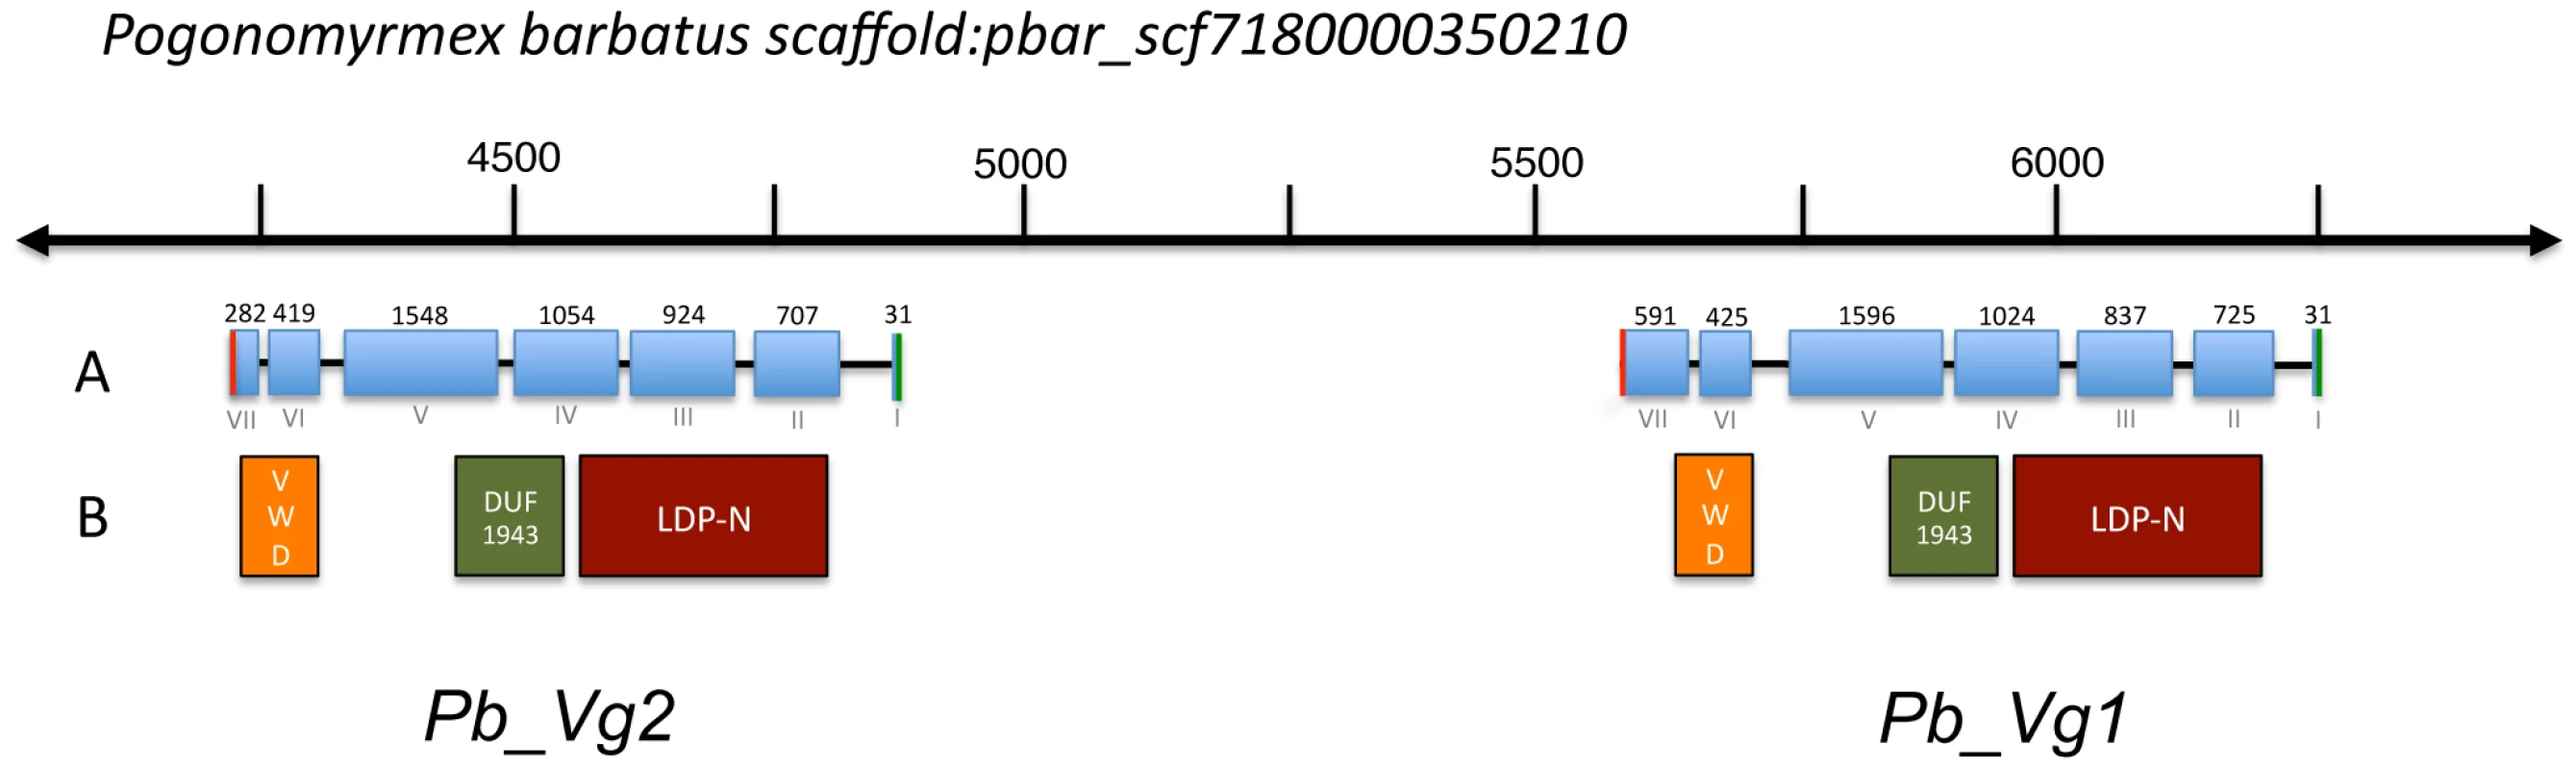 Genomic map of vitellogenin genes in <i>Pogonomyrmex barbatus</i>.